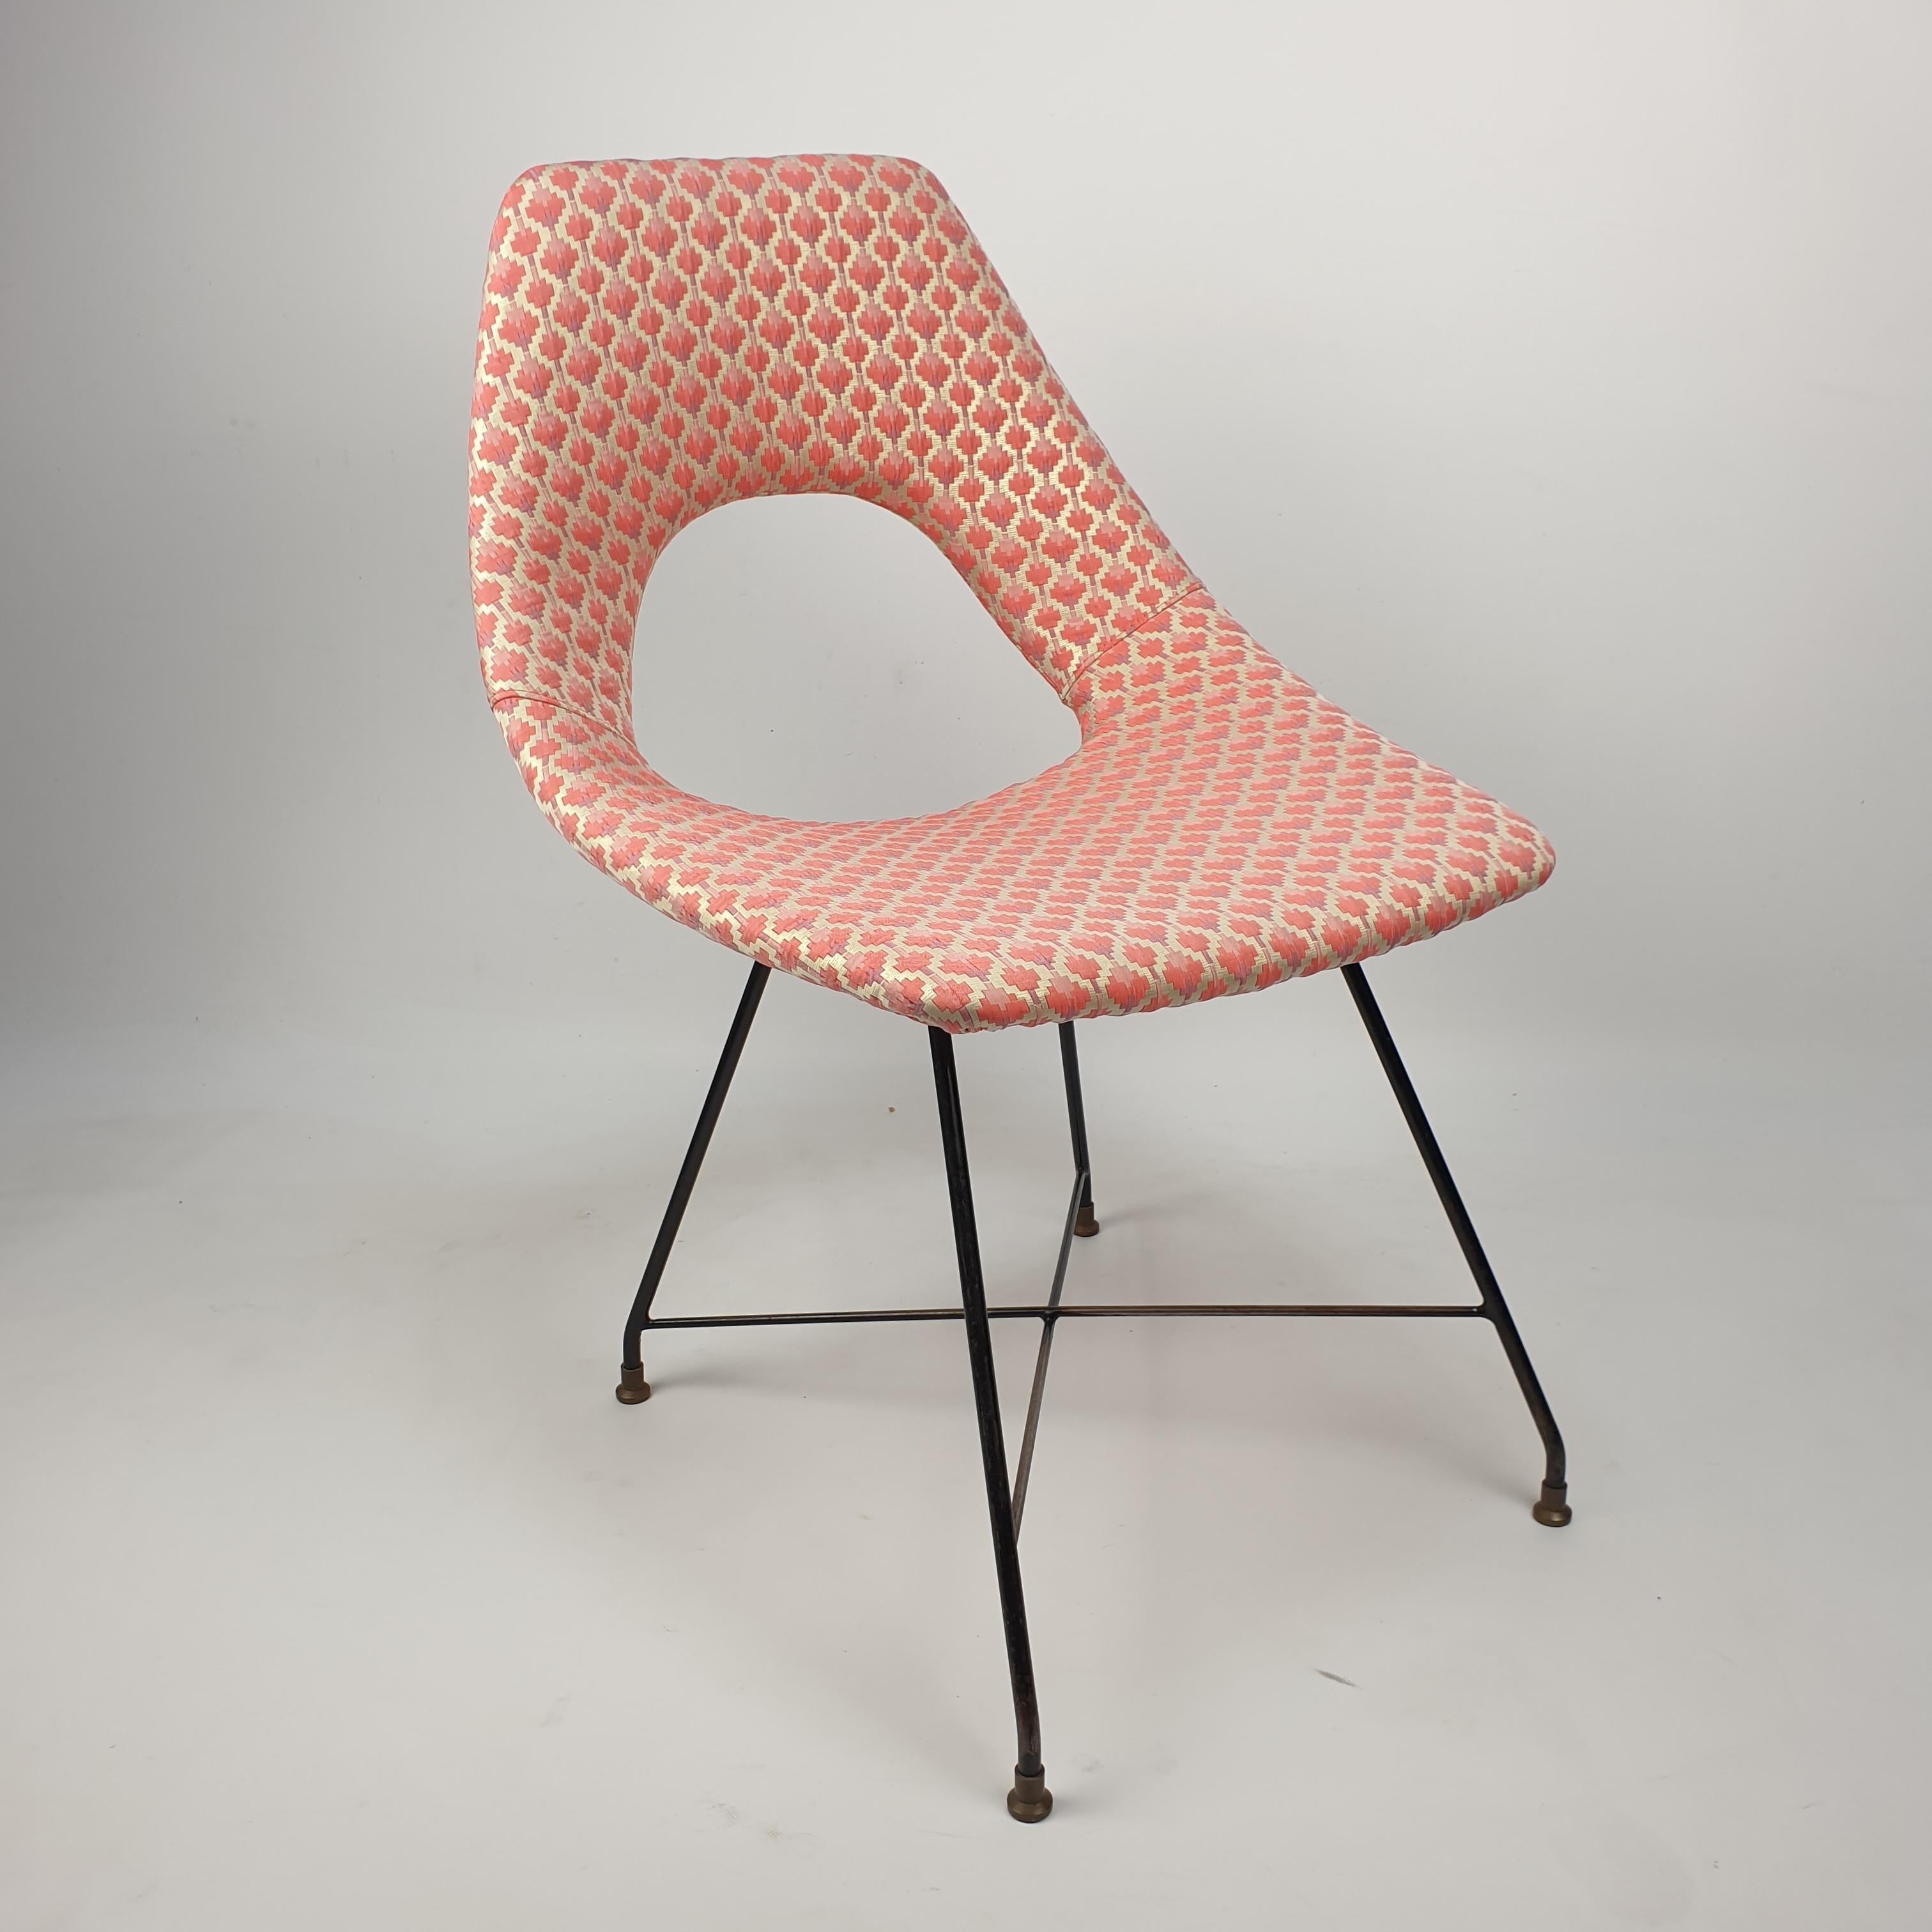 Atemberaubender und äußerst seltener Esszimmerstuhl, entworfen von Augusto Bozzi und hergestellt von Saporiti, Italien, 1954. Der Stuhl hat ein schwarz lackiertes Metalldrahtgestell mit Messingfüßen. Der Stuhl ist neu gepolstert und mit einem